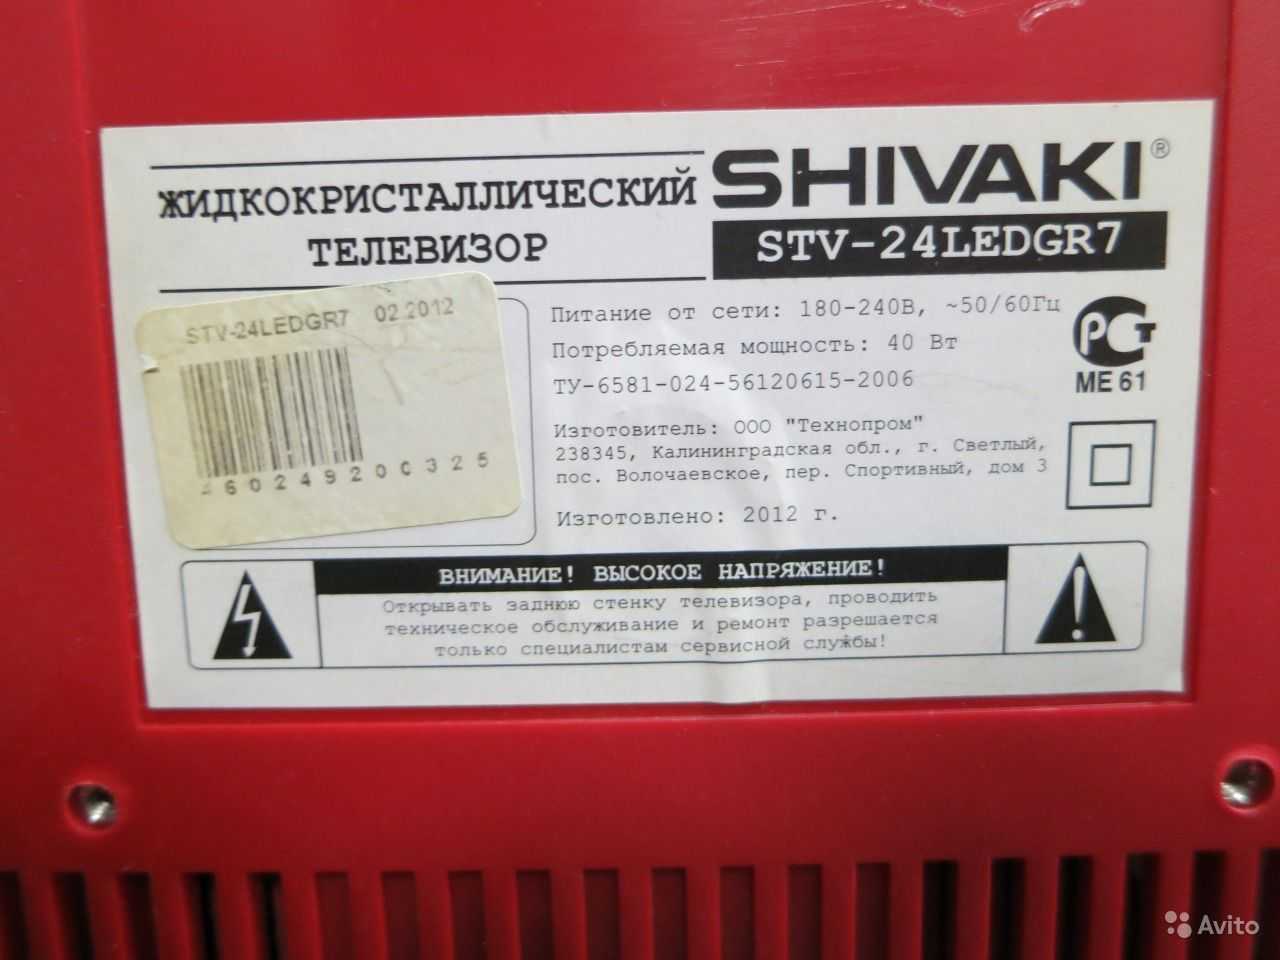 Shivaki stv-24ledgr7 купить по акционной цене , отзывы и обзоры.